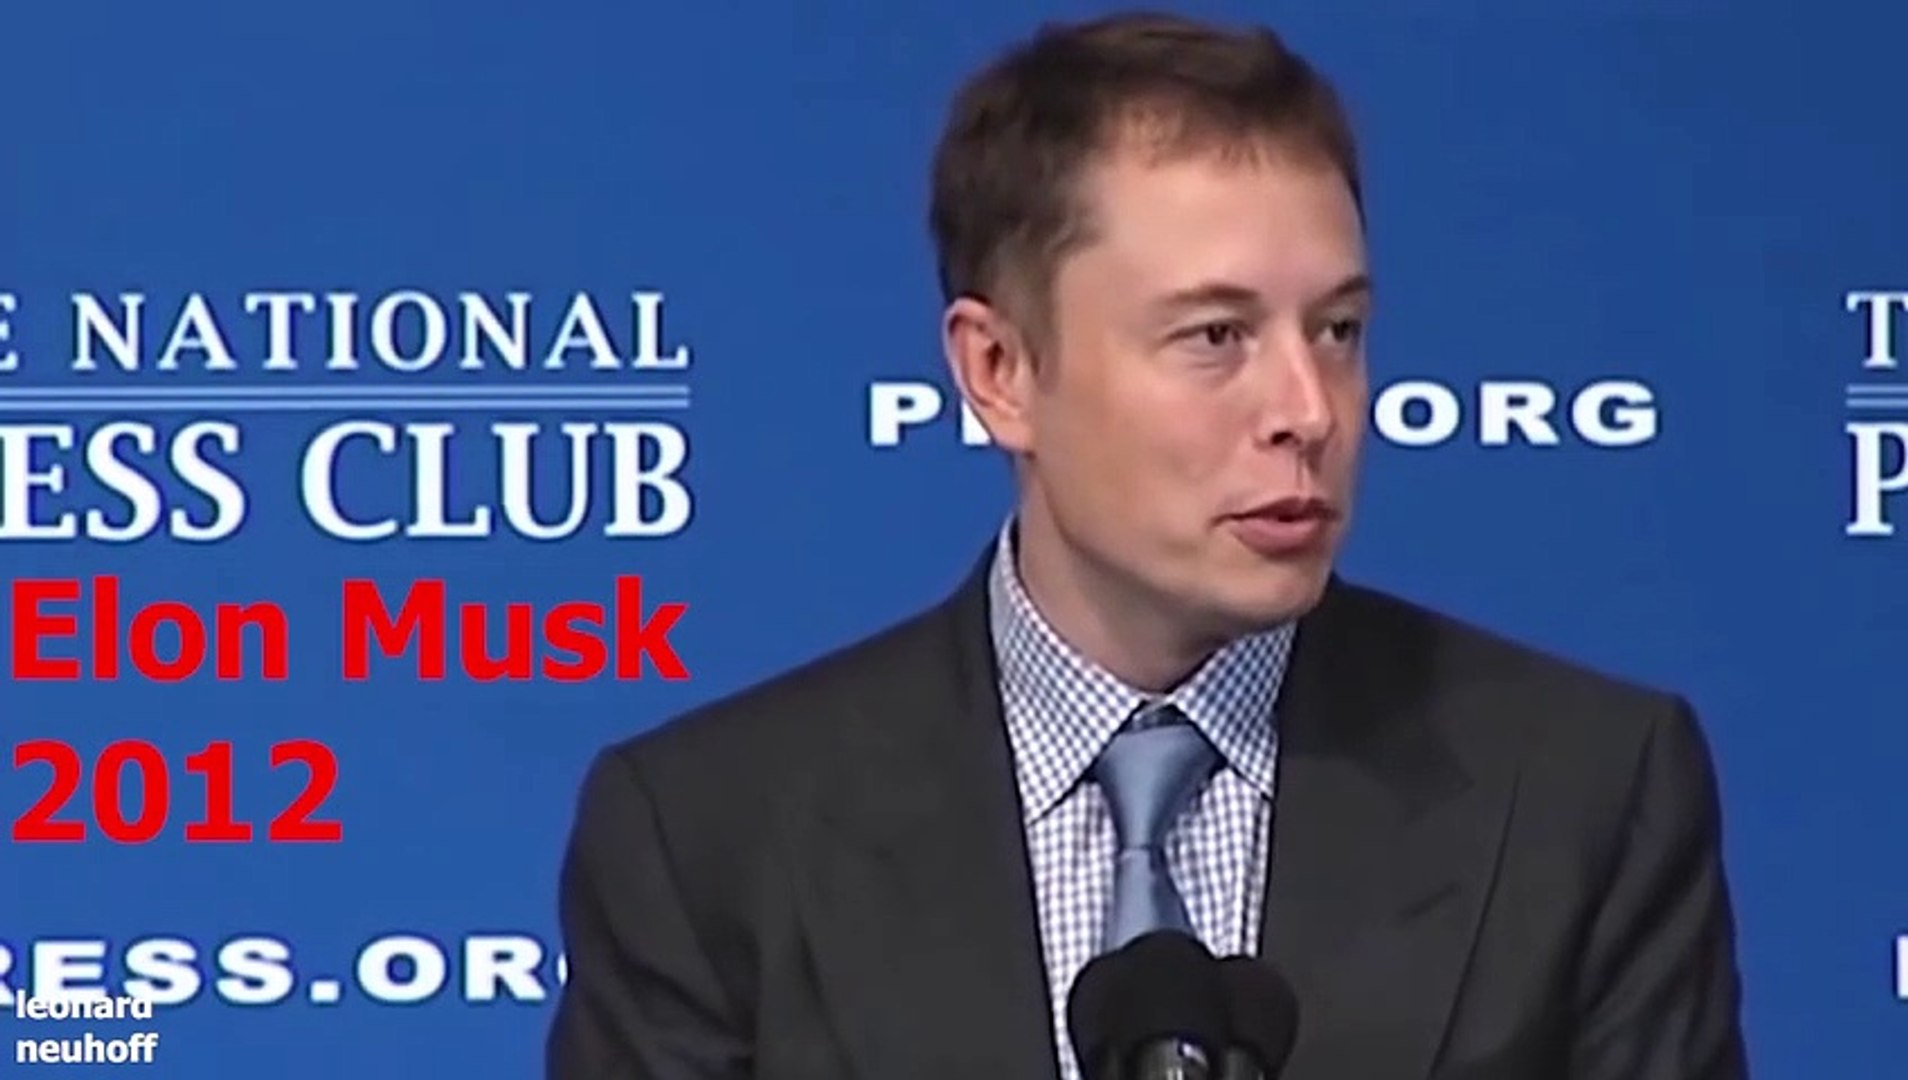 Elon Musk kicks Jeff Bezos ass